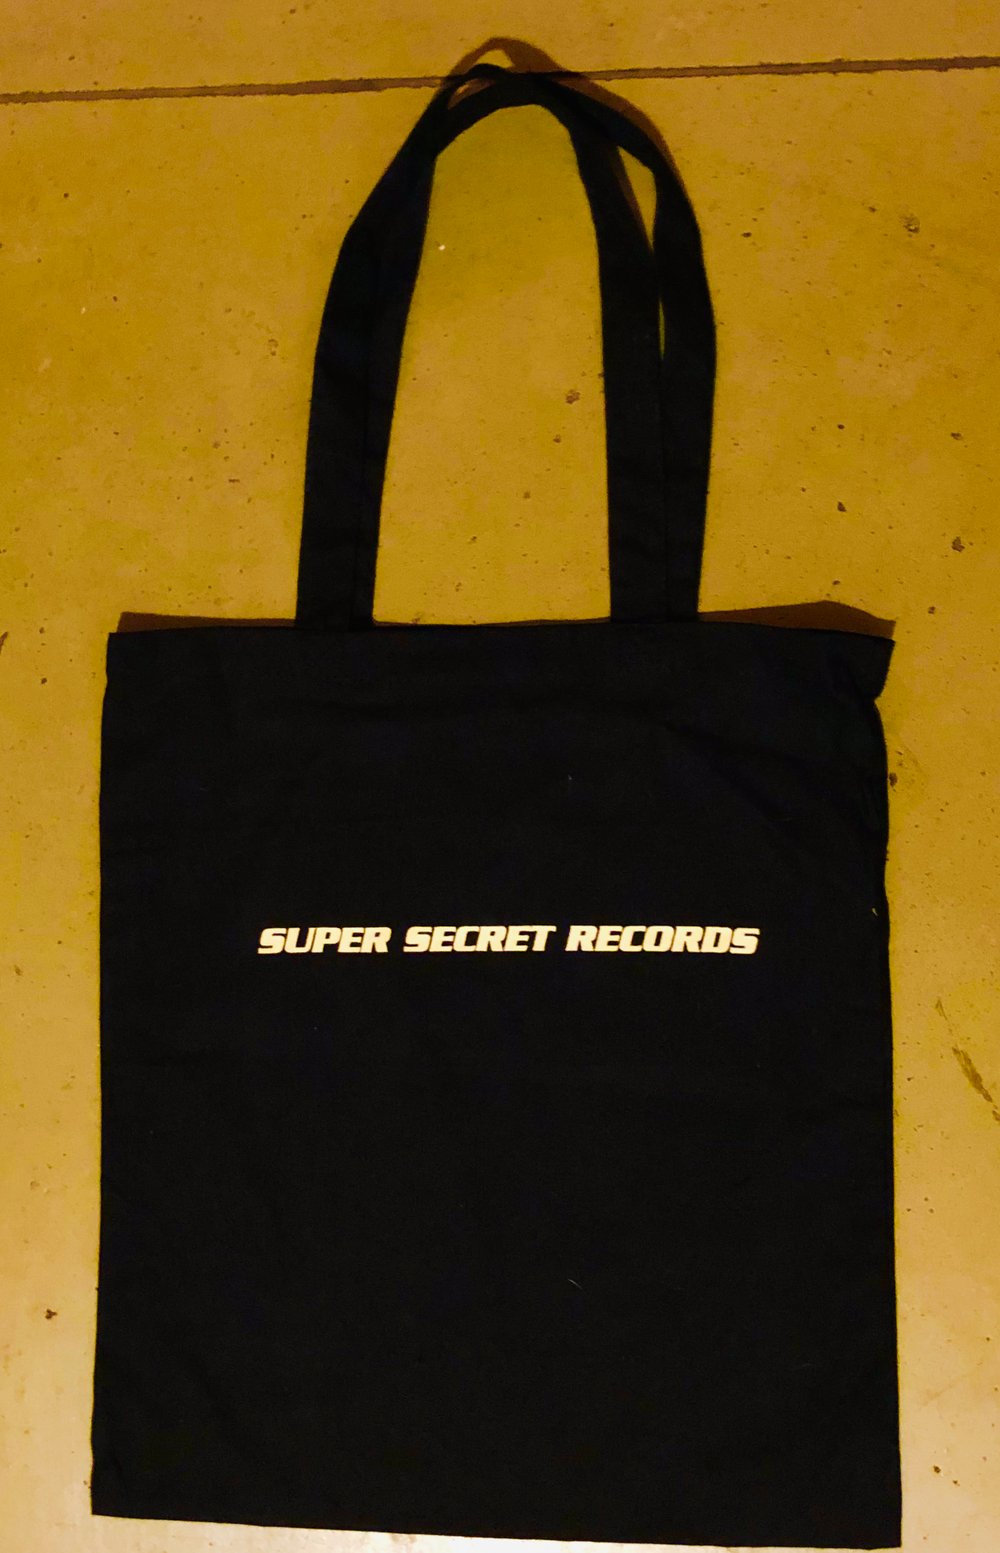 New! Super Secret Records vinyl tote bag